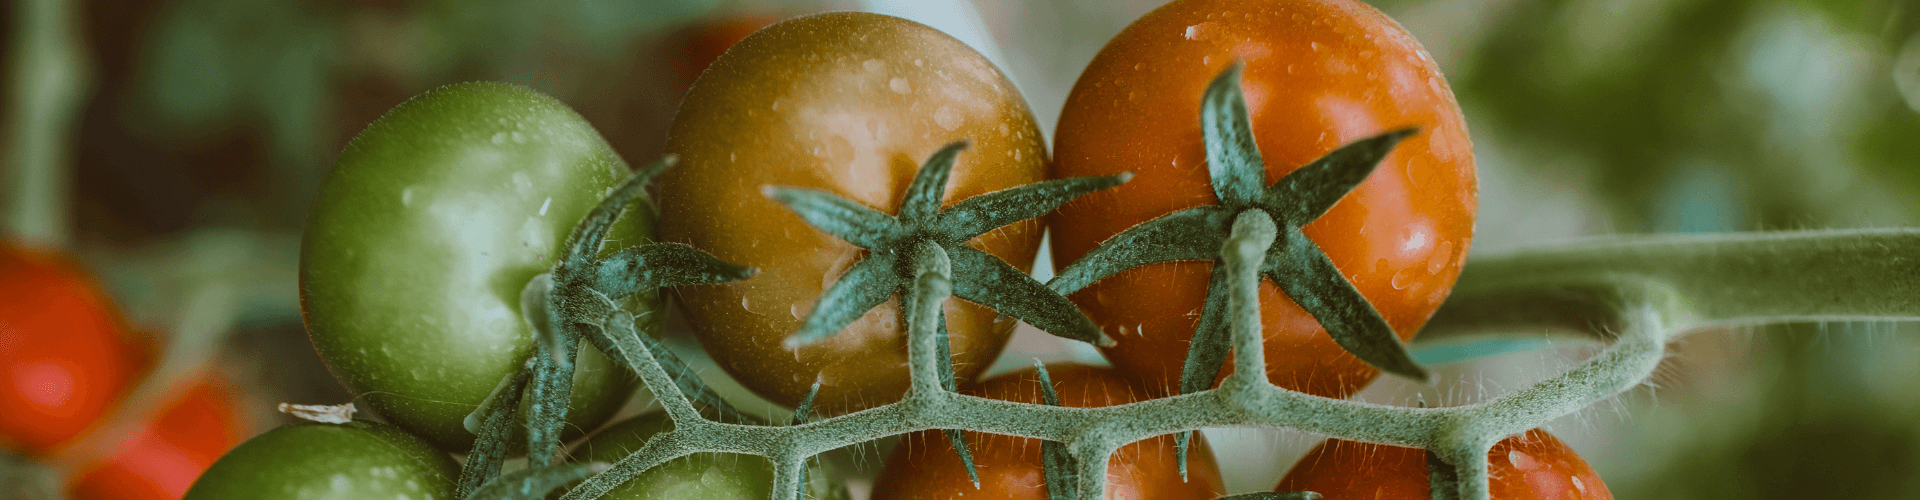 7 conseils pour réussir ses semis de tomates Blog - Dr. Jonquille & Mr. Ail